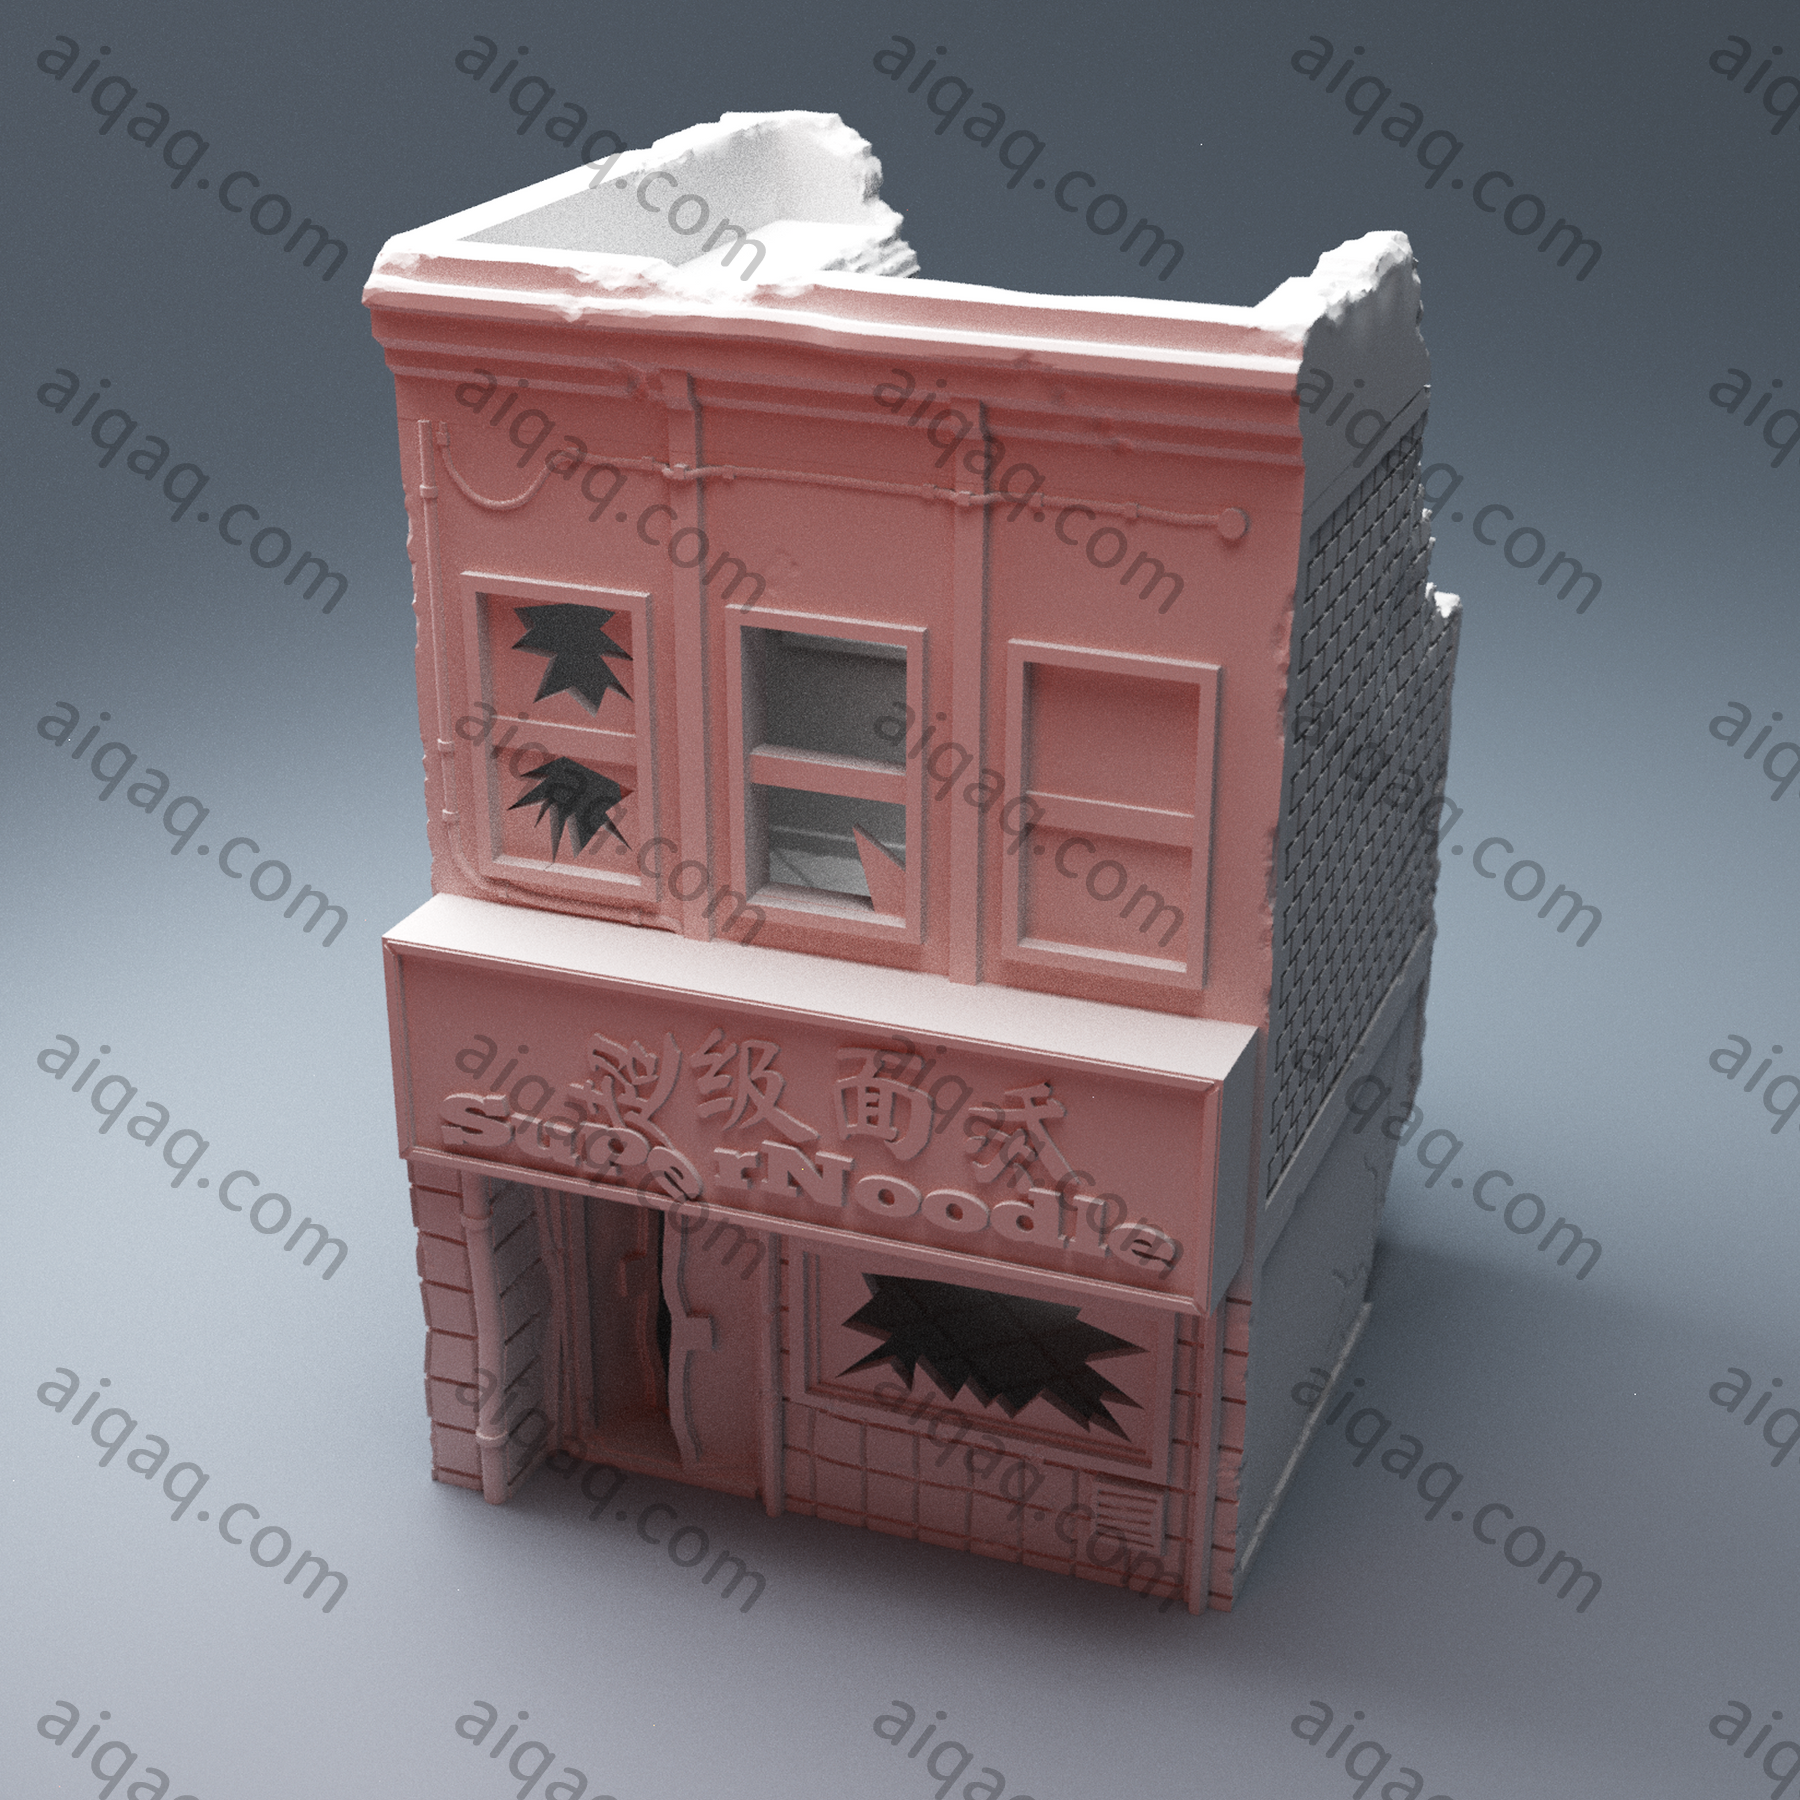 城市废墟面馆-STL下载网_3D打印模型网_3D打印机_3D模型库